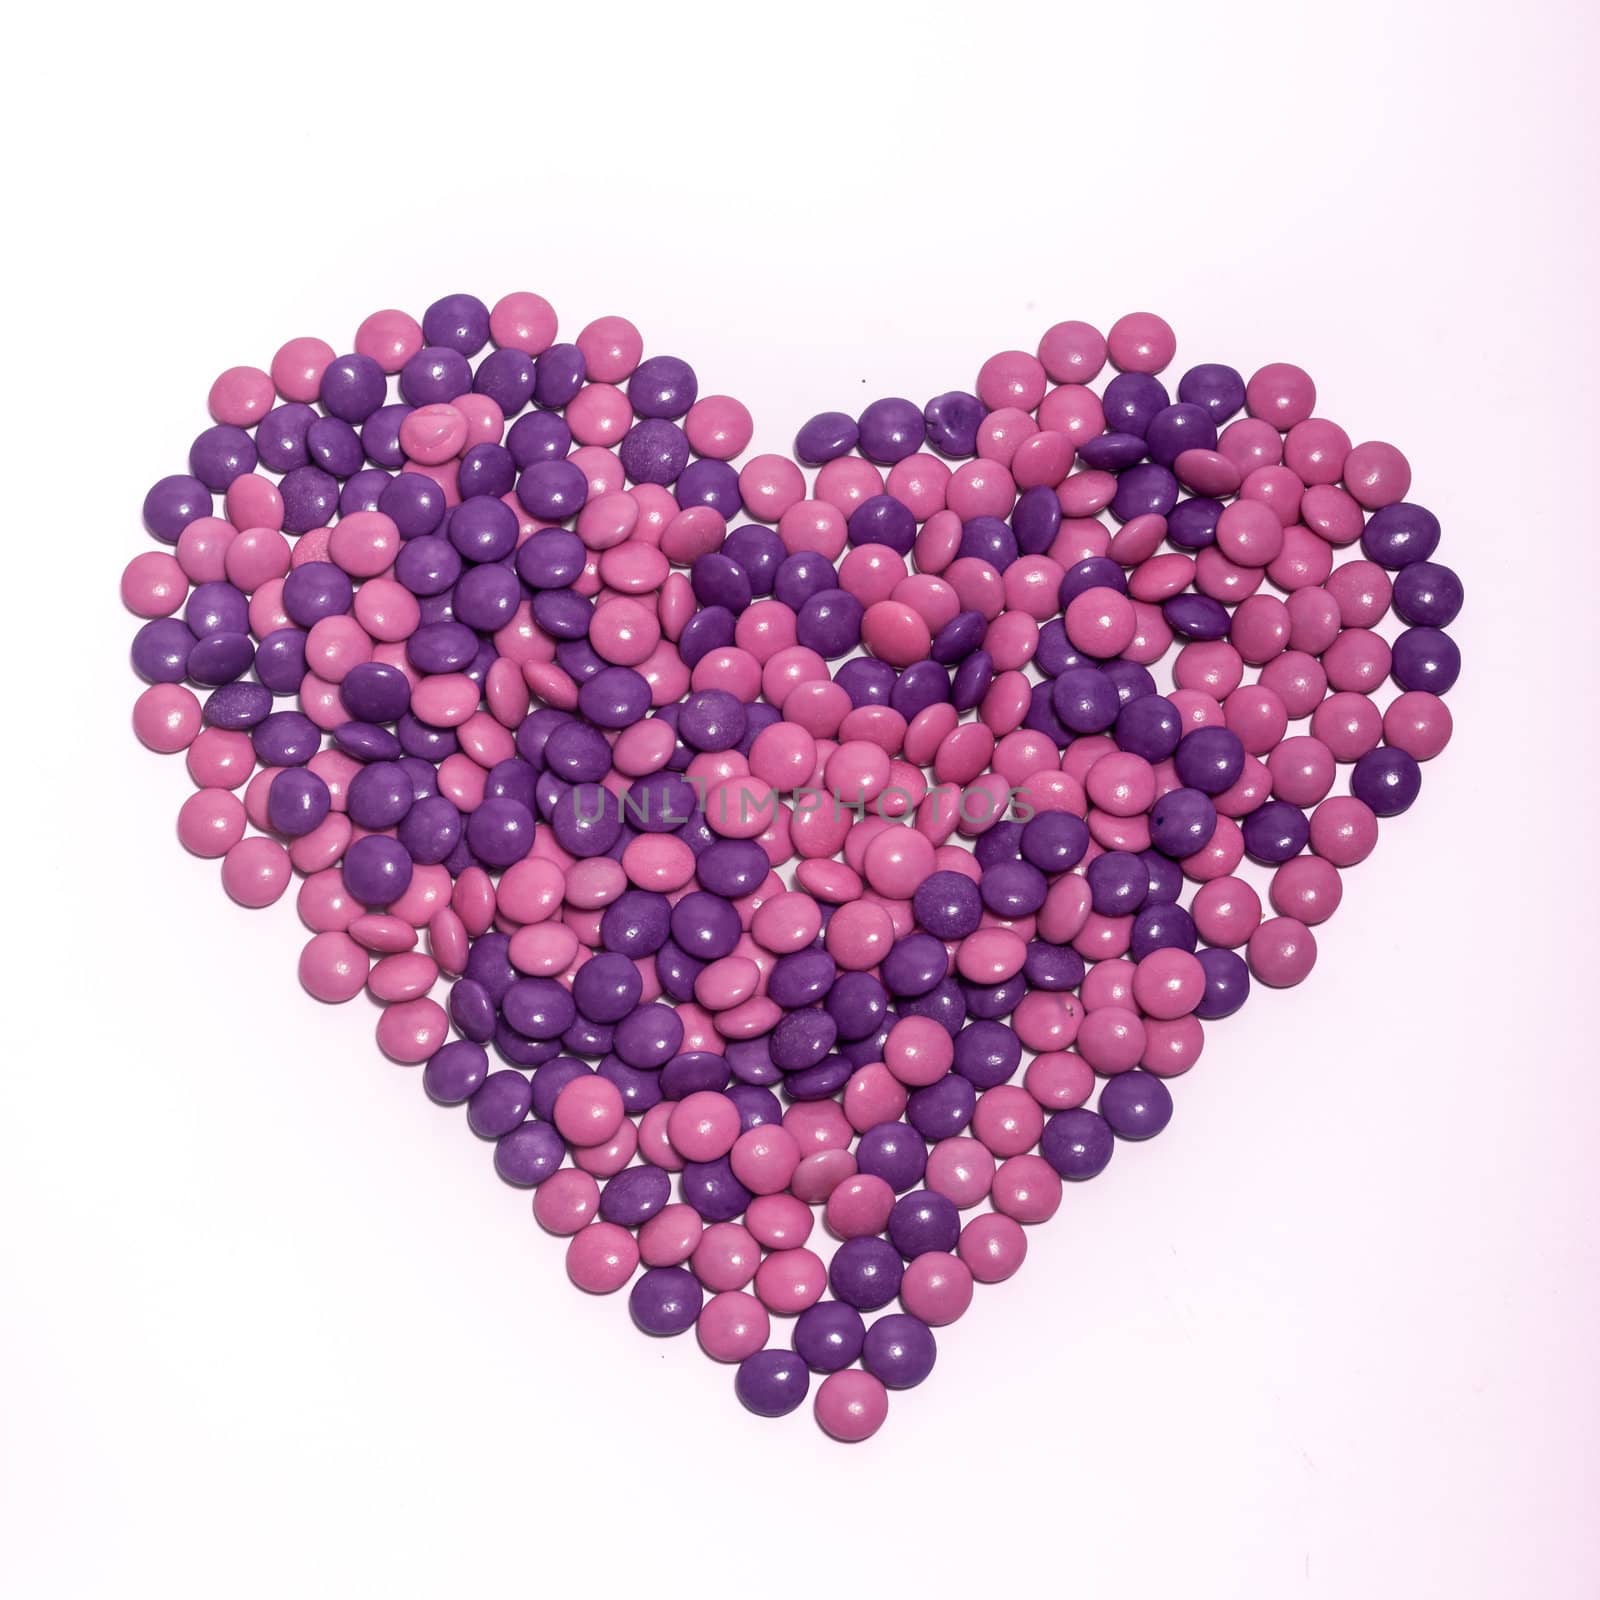 Chocolate Buttons Heart by Daniel_Wiedemann